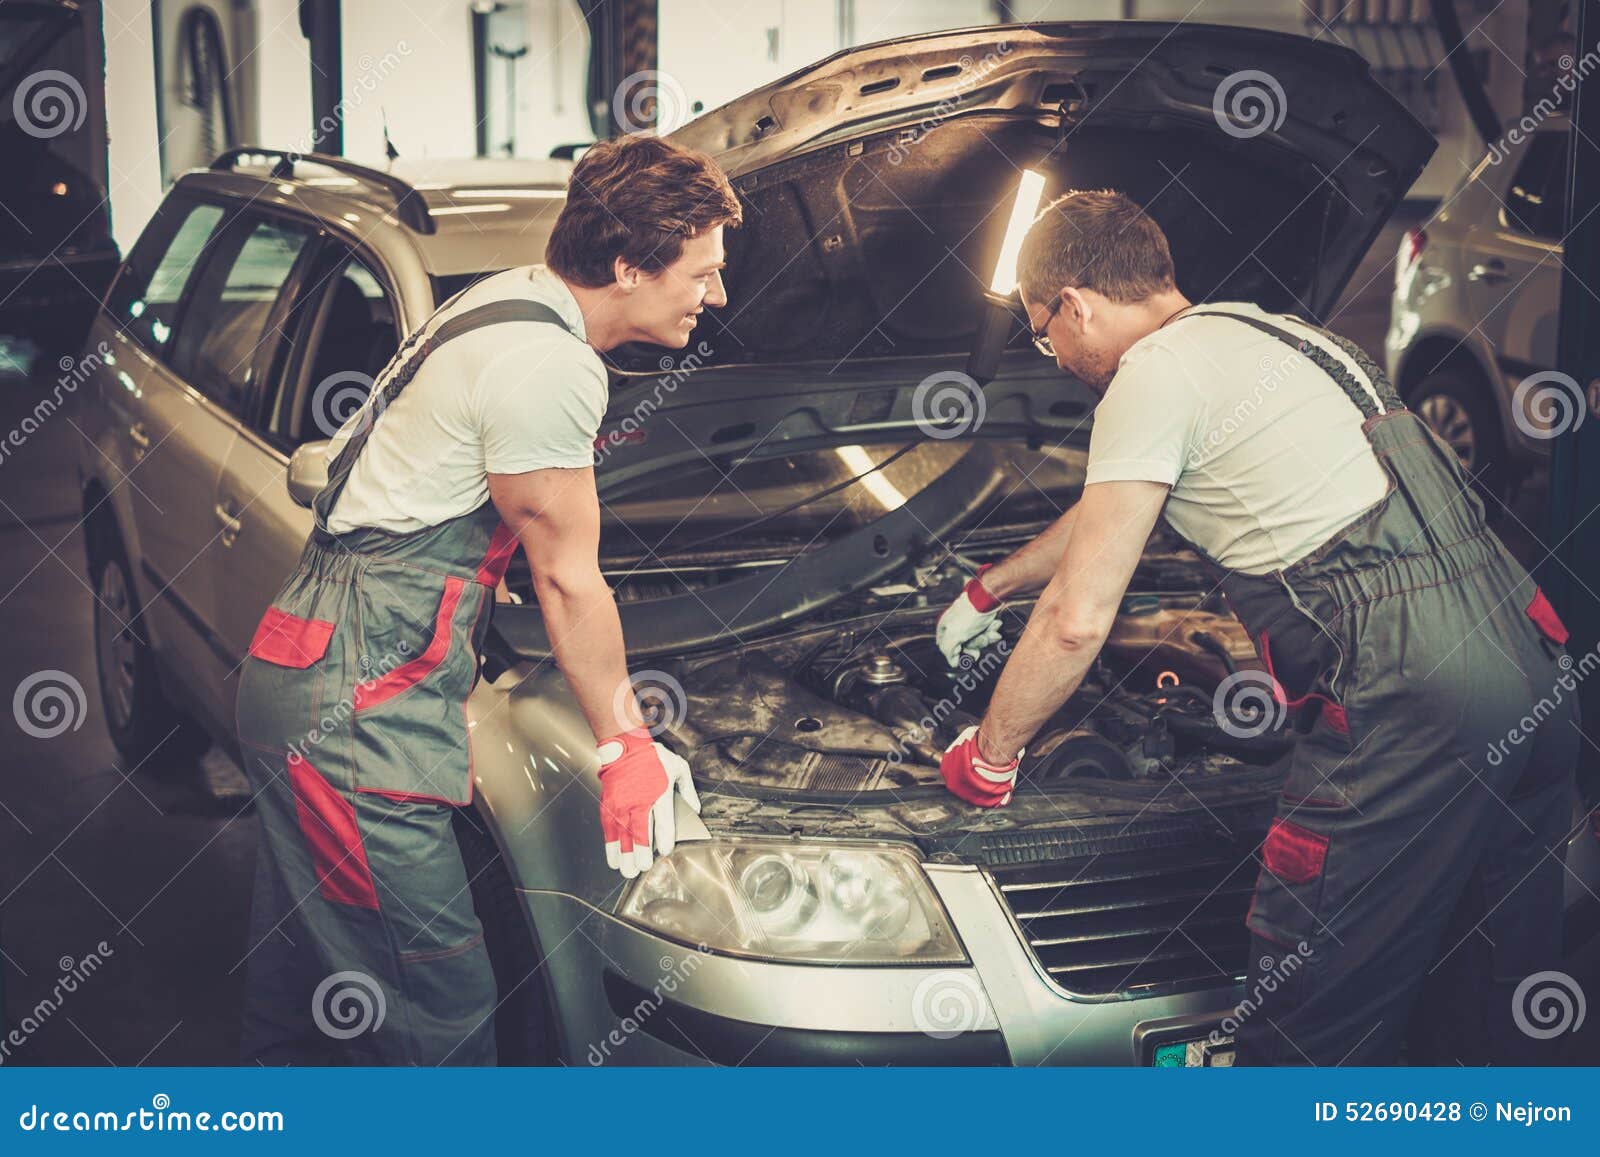 Ремонтирование машин. Механик в мастерской. Машина в ремонте в мастерской. Чинит авто в гараже. Включи чинить машину